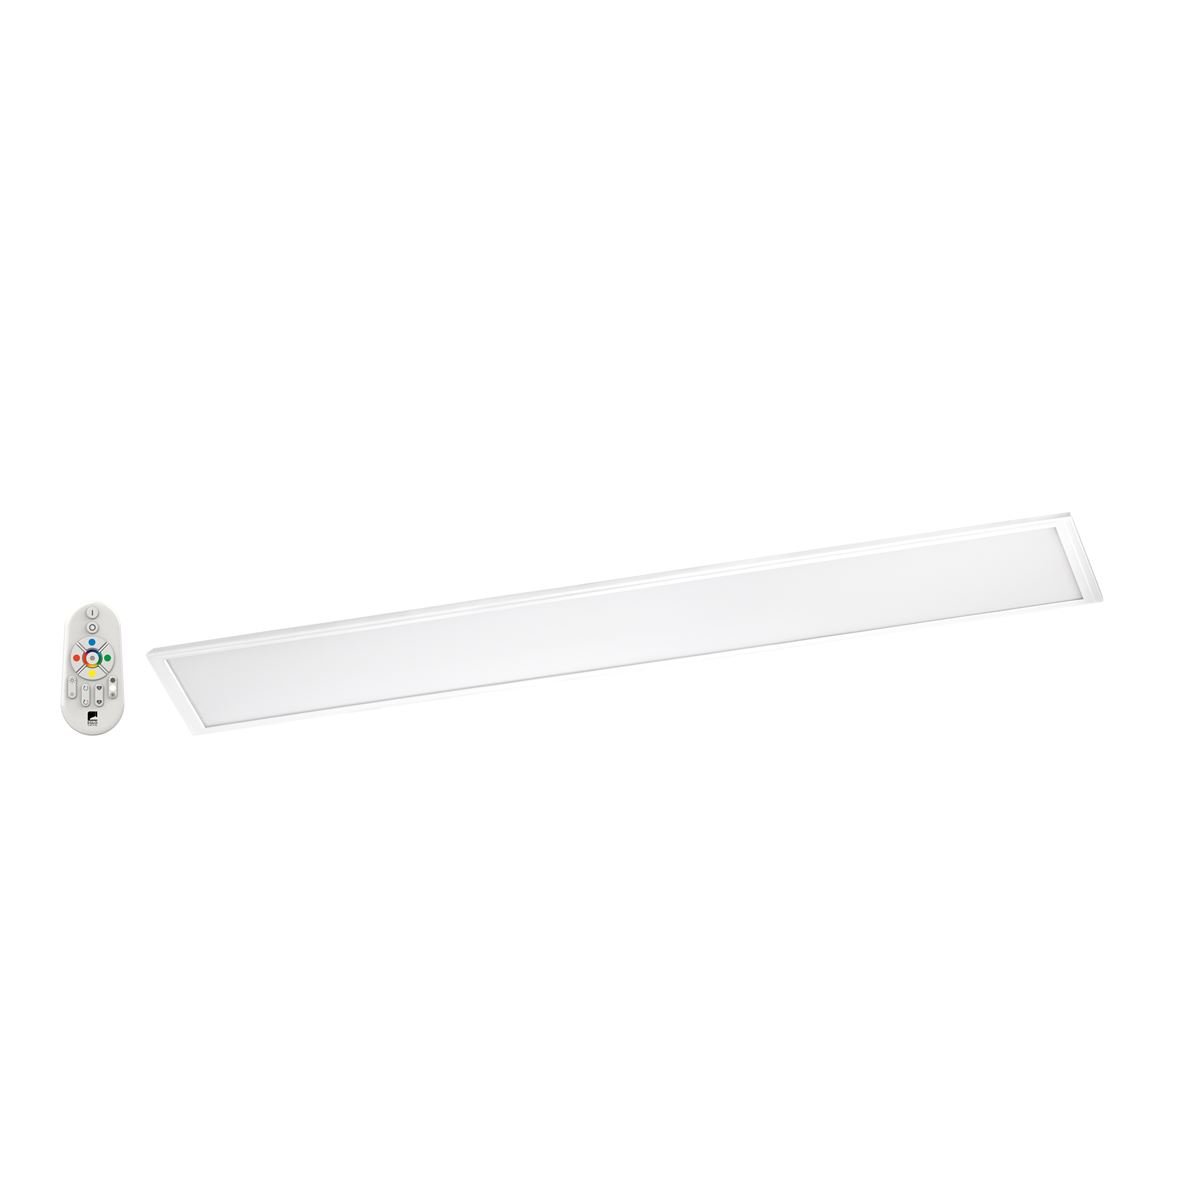 EGLO connect LED Deckenleuchte Salobrena-C Panel, Smart Home Deckenlampe, Material: Aluminium, Kunststoff, Farbe: Weiß, 120x30 cm, dimmbar, Weißtöne und Farben einstellbar